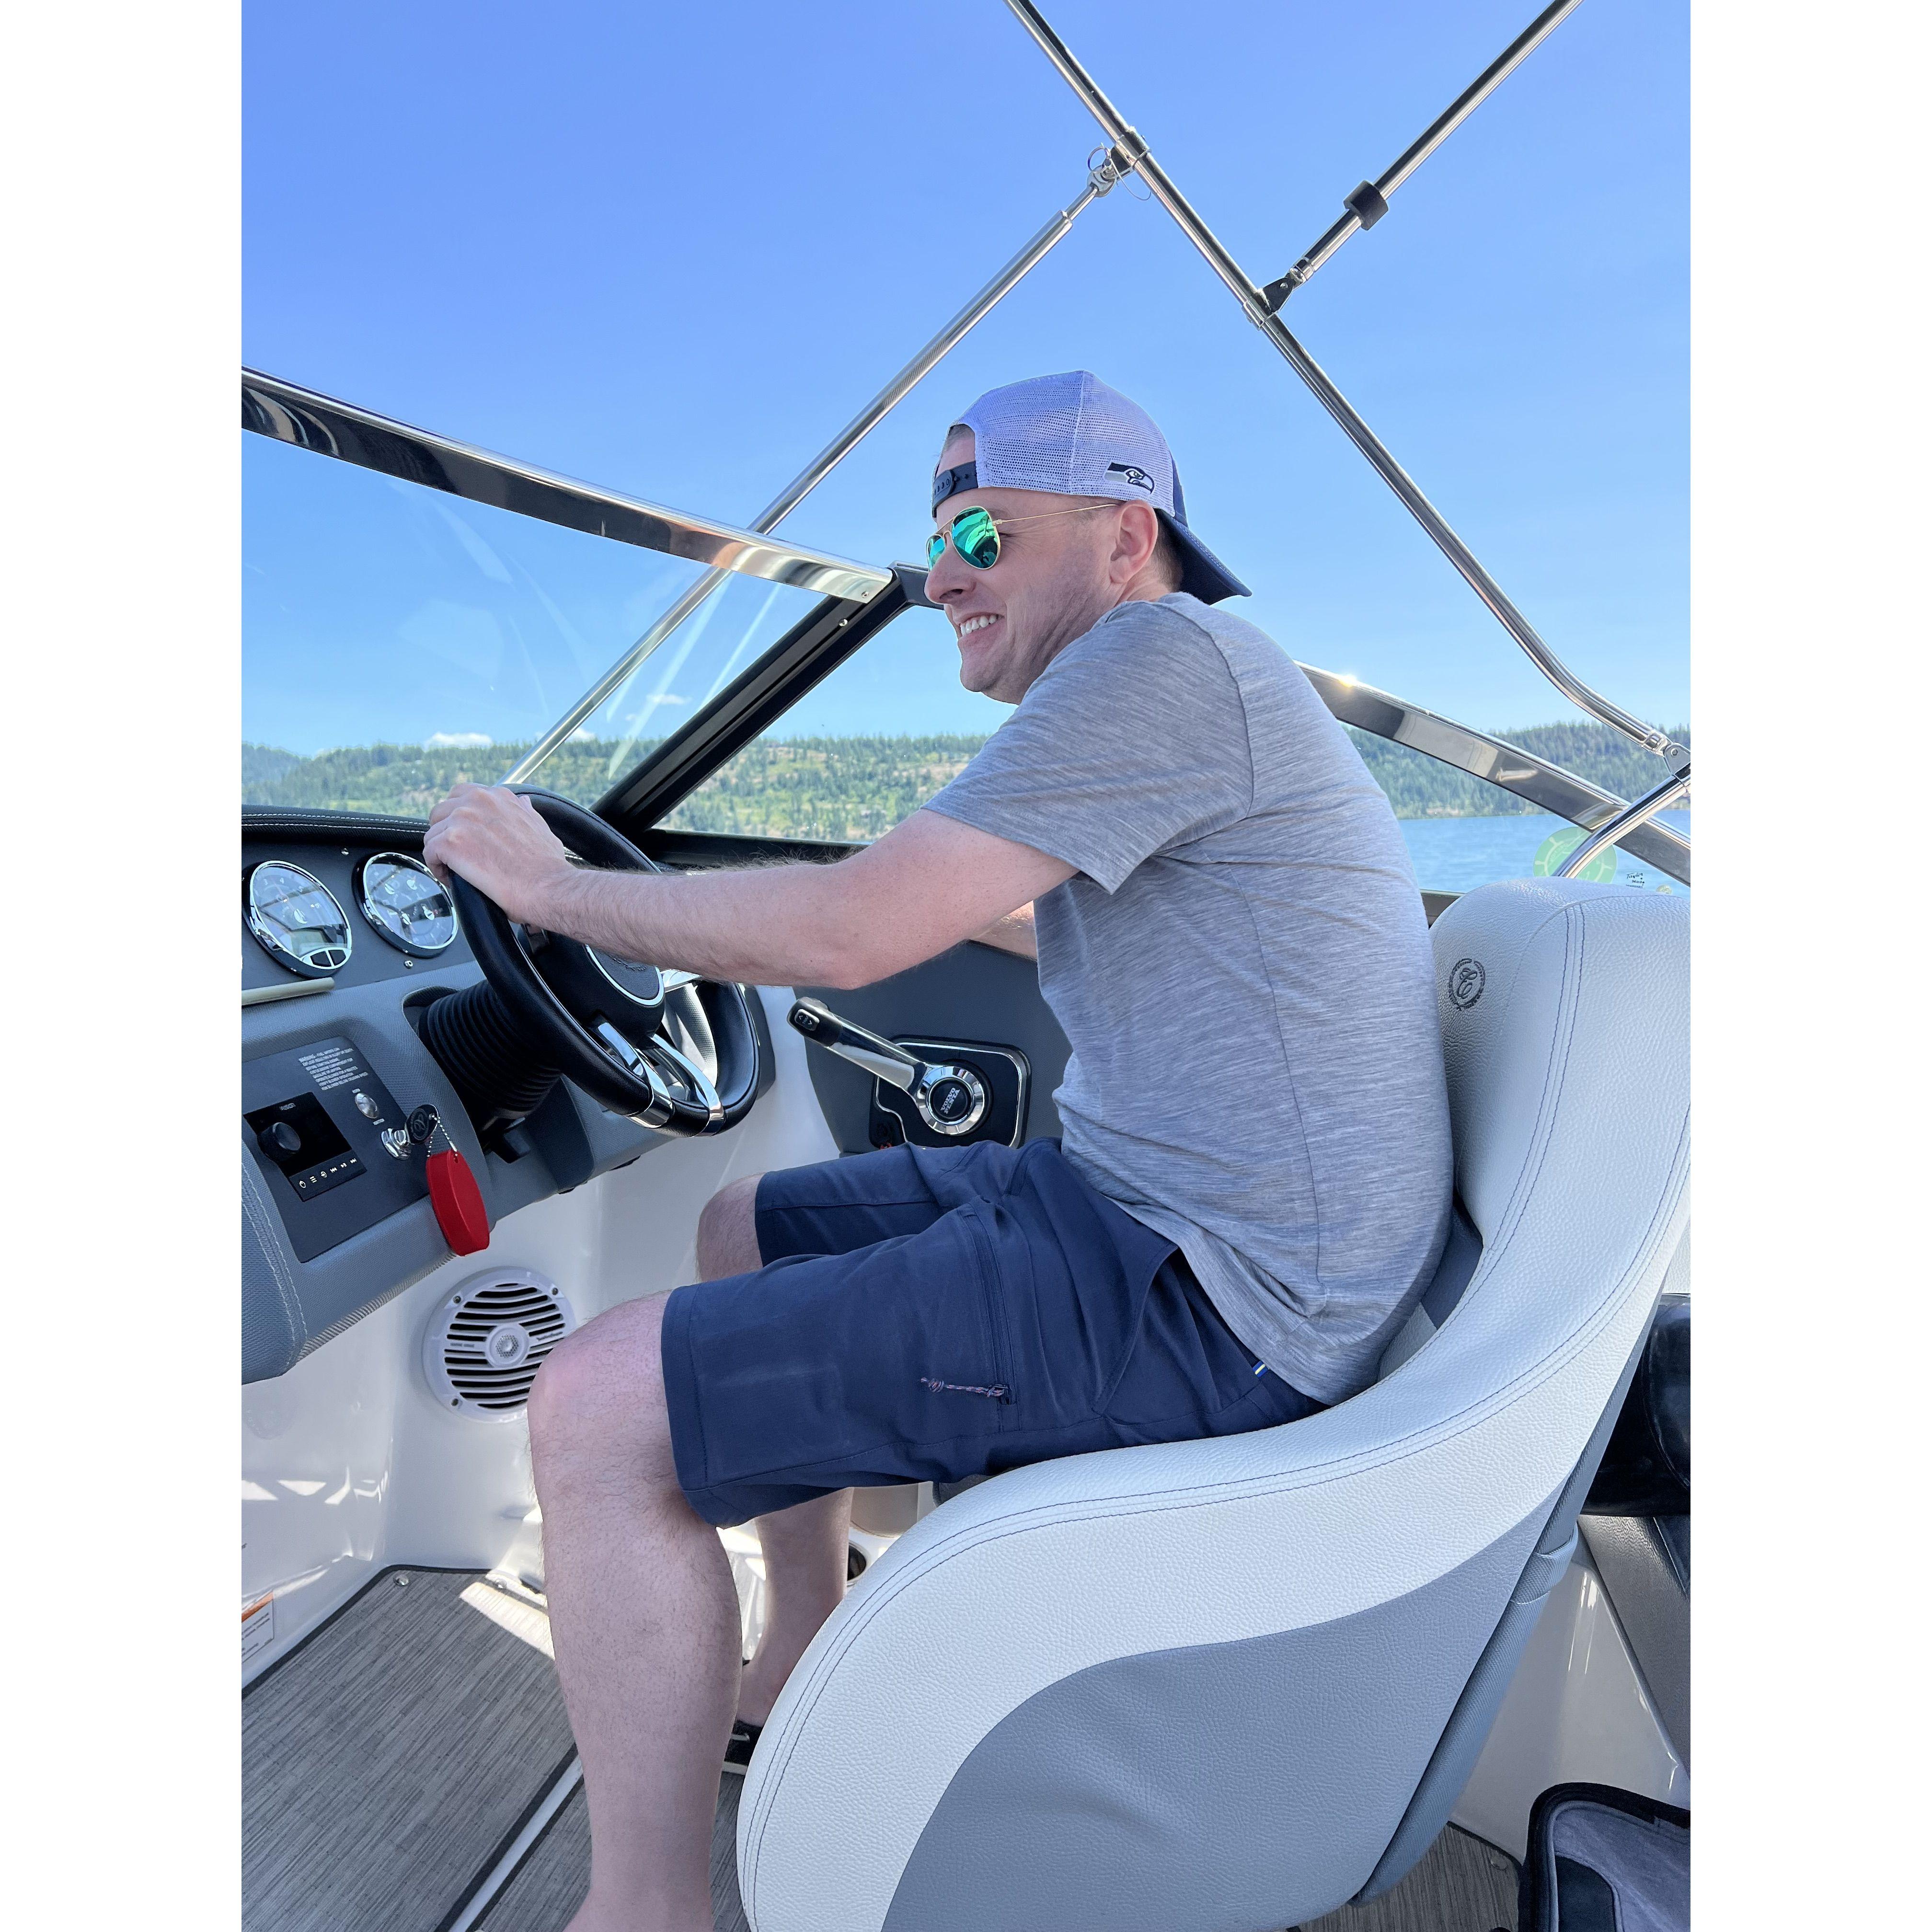 Jeremy drives the boat!